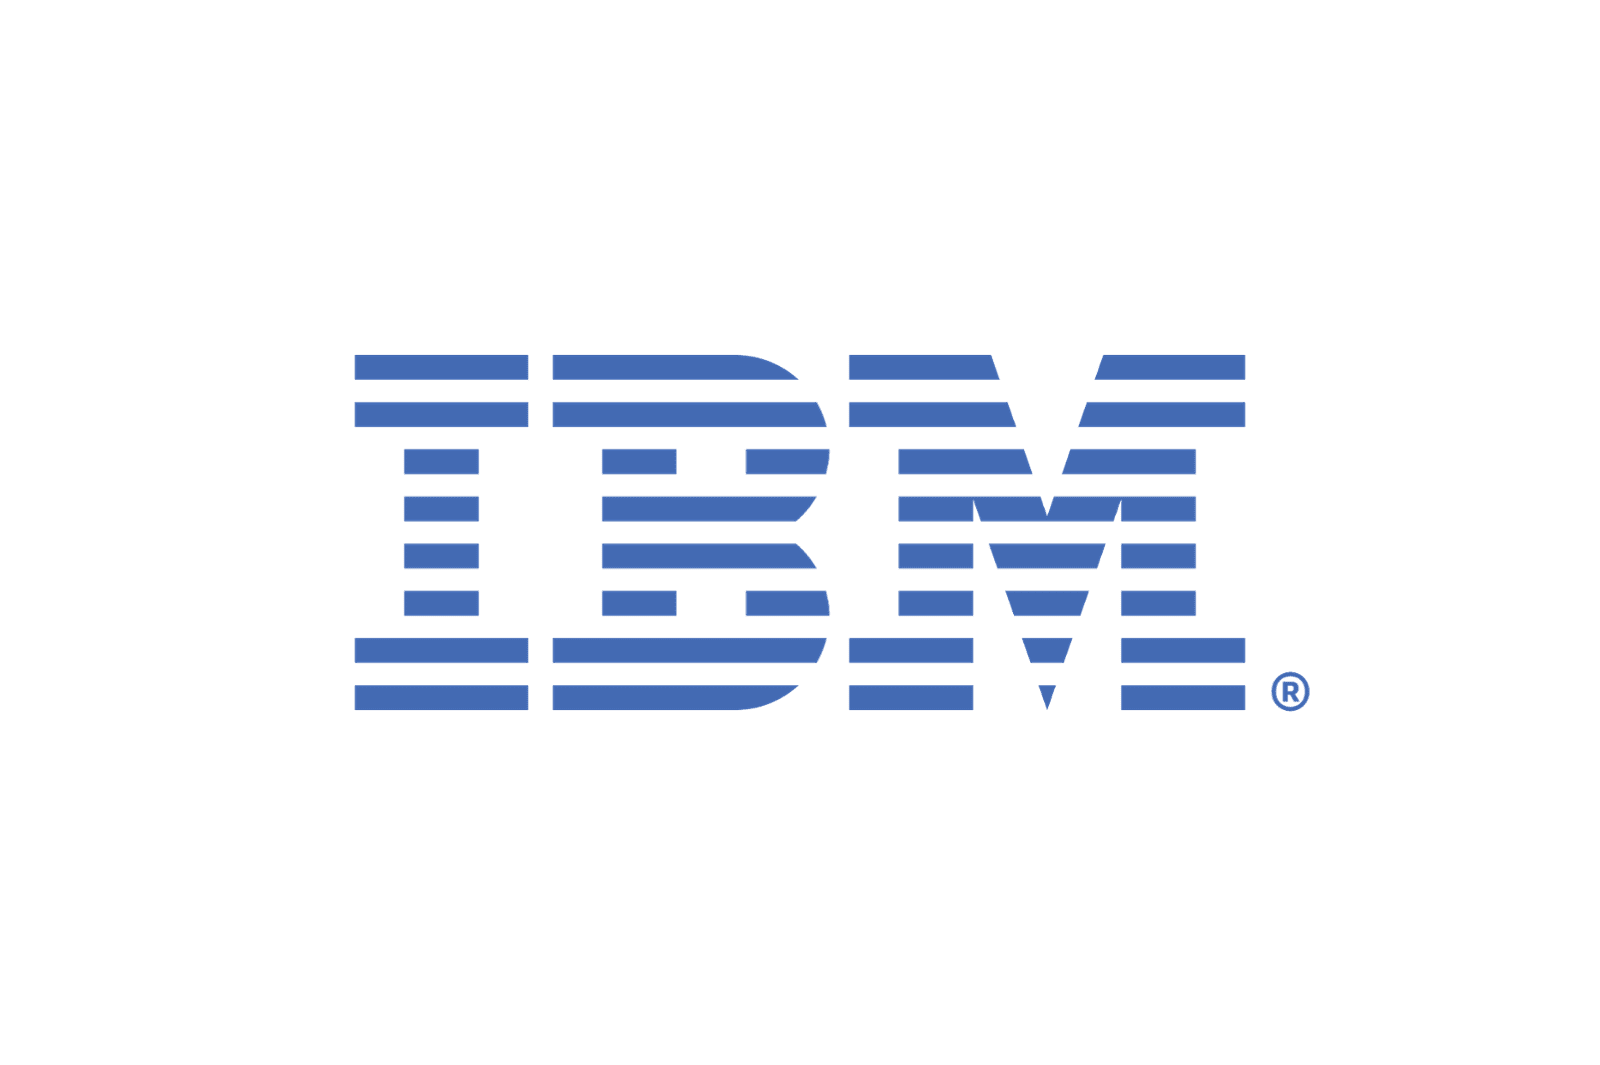 Logo de IBM